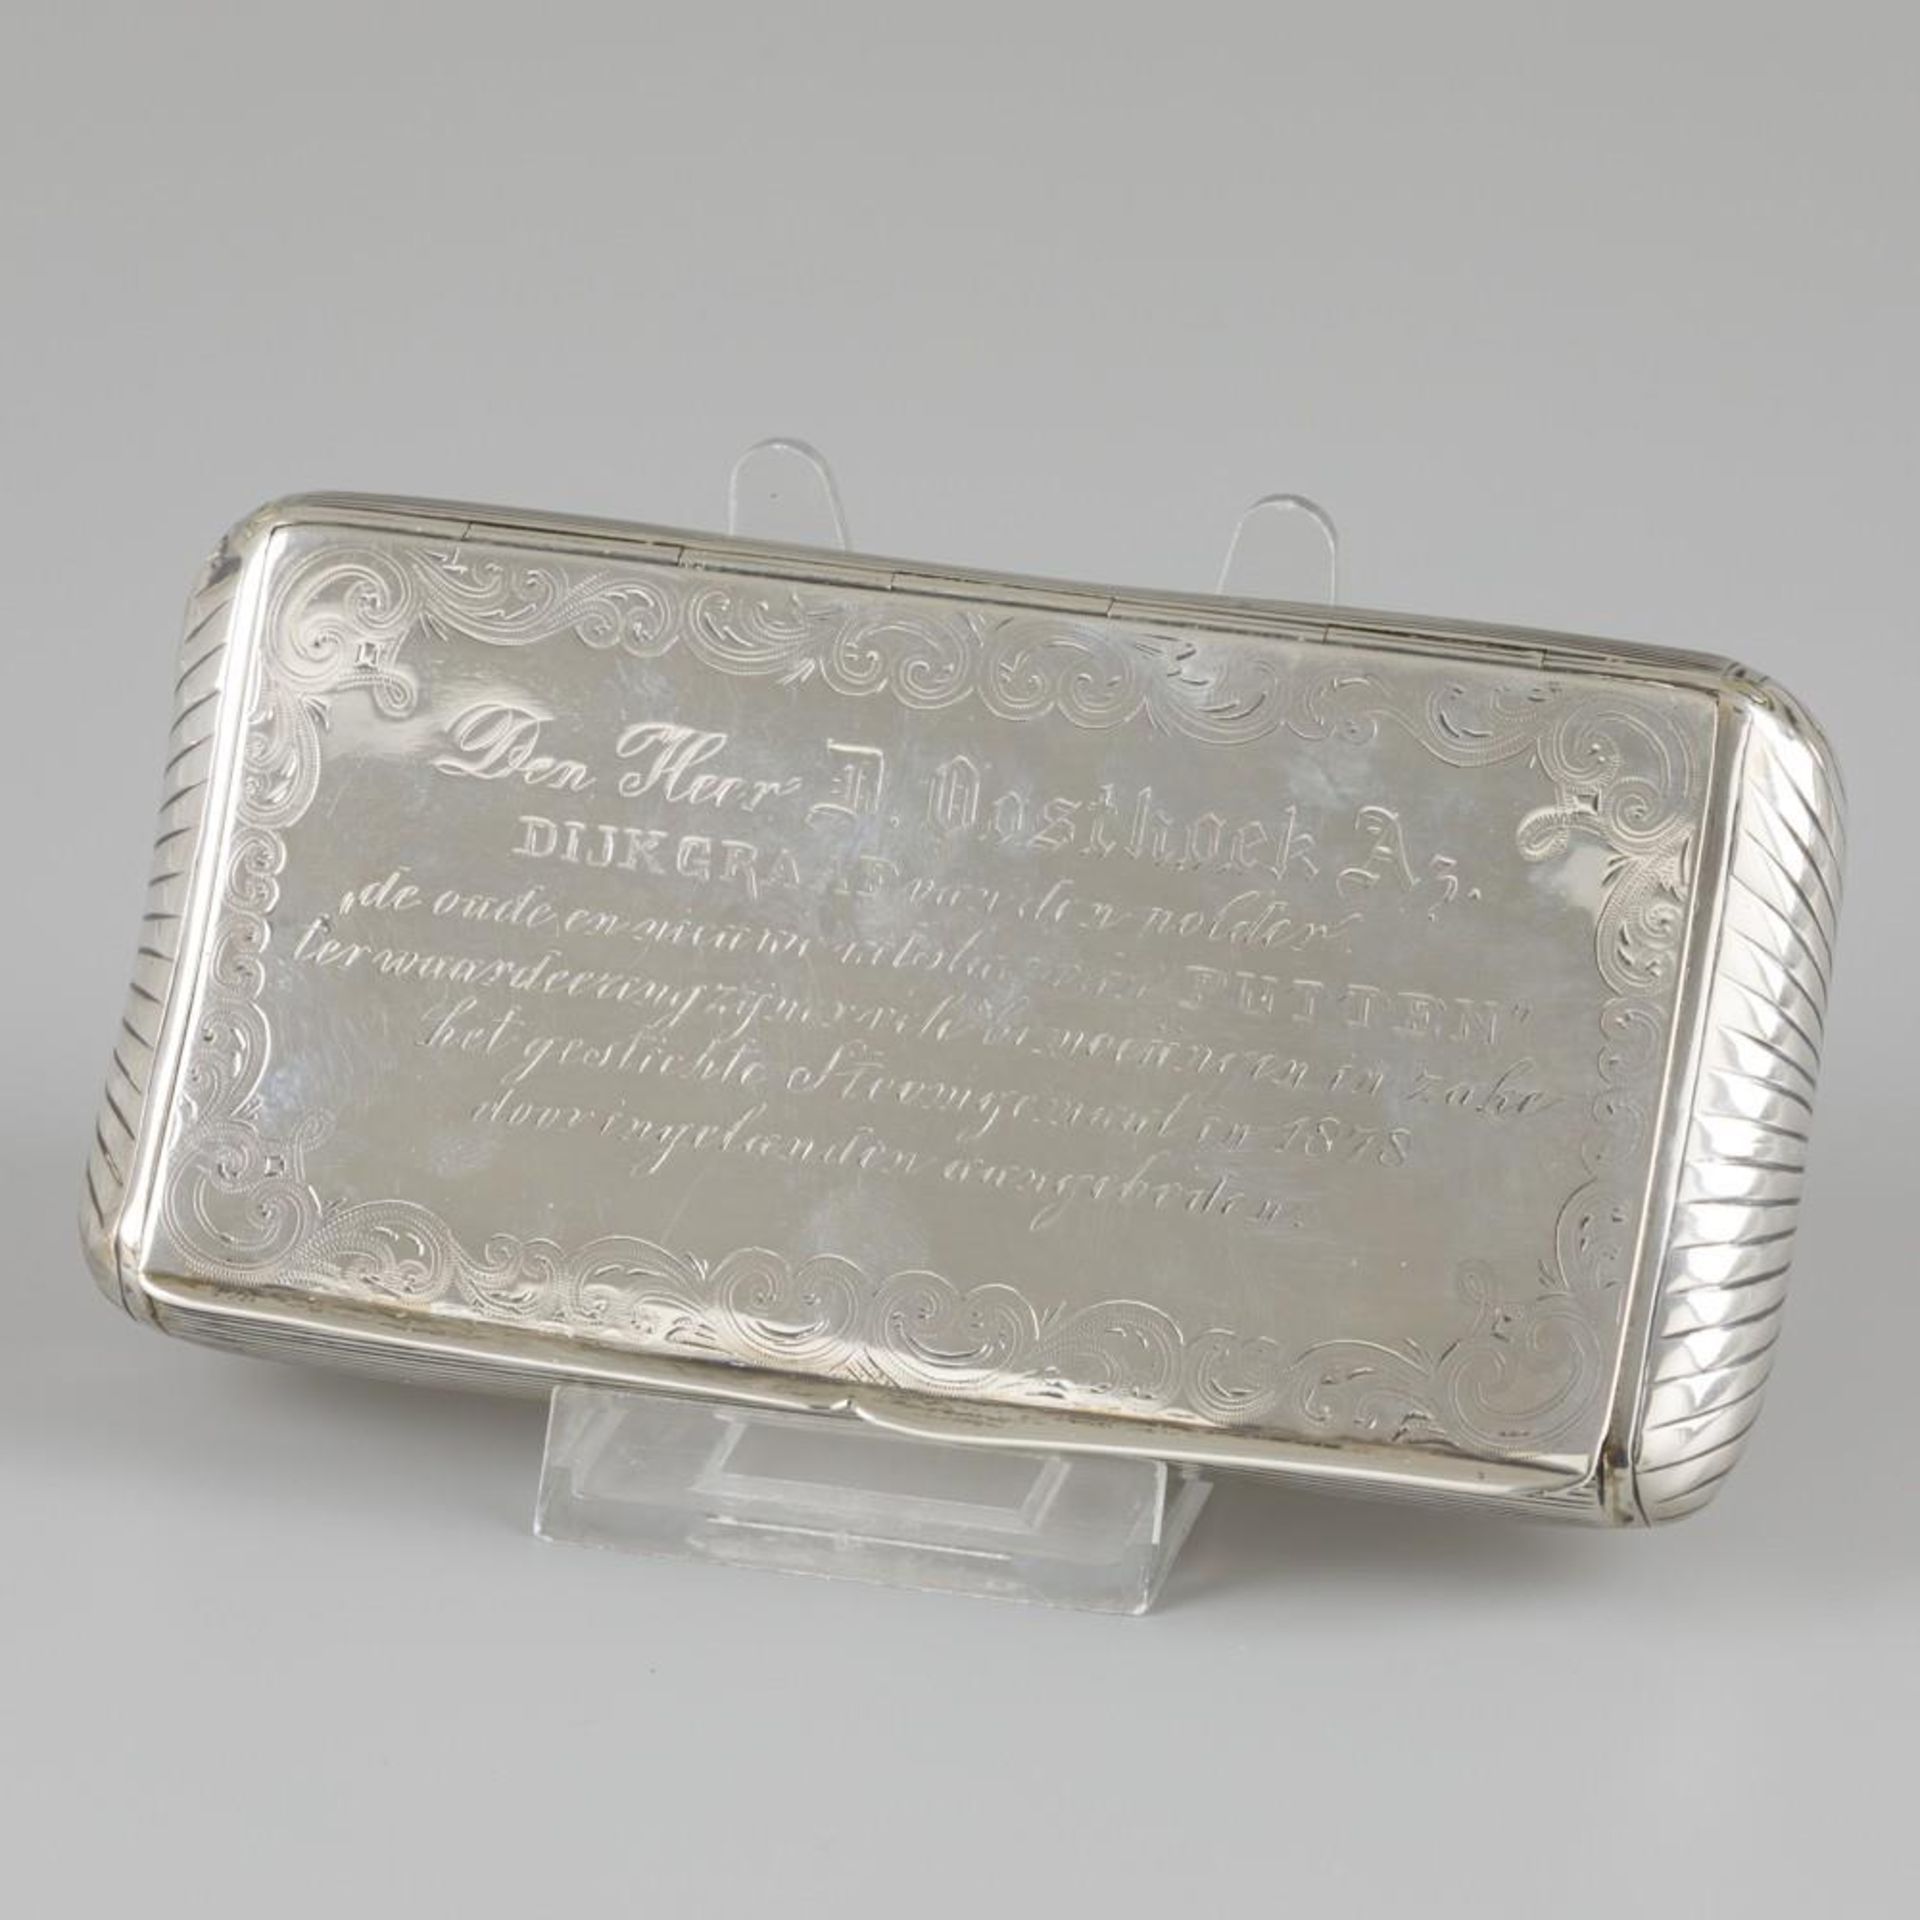 Tobacco box silver.